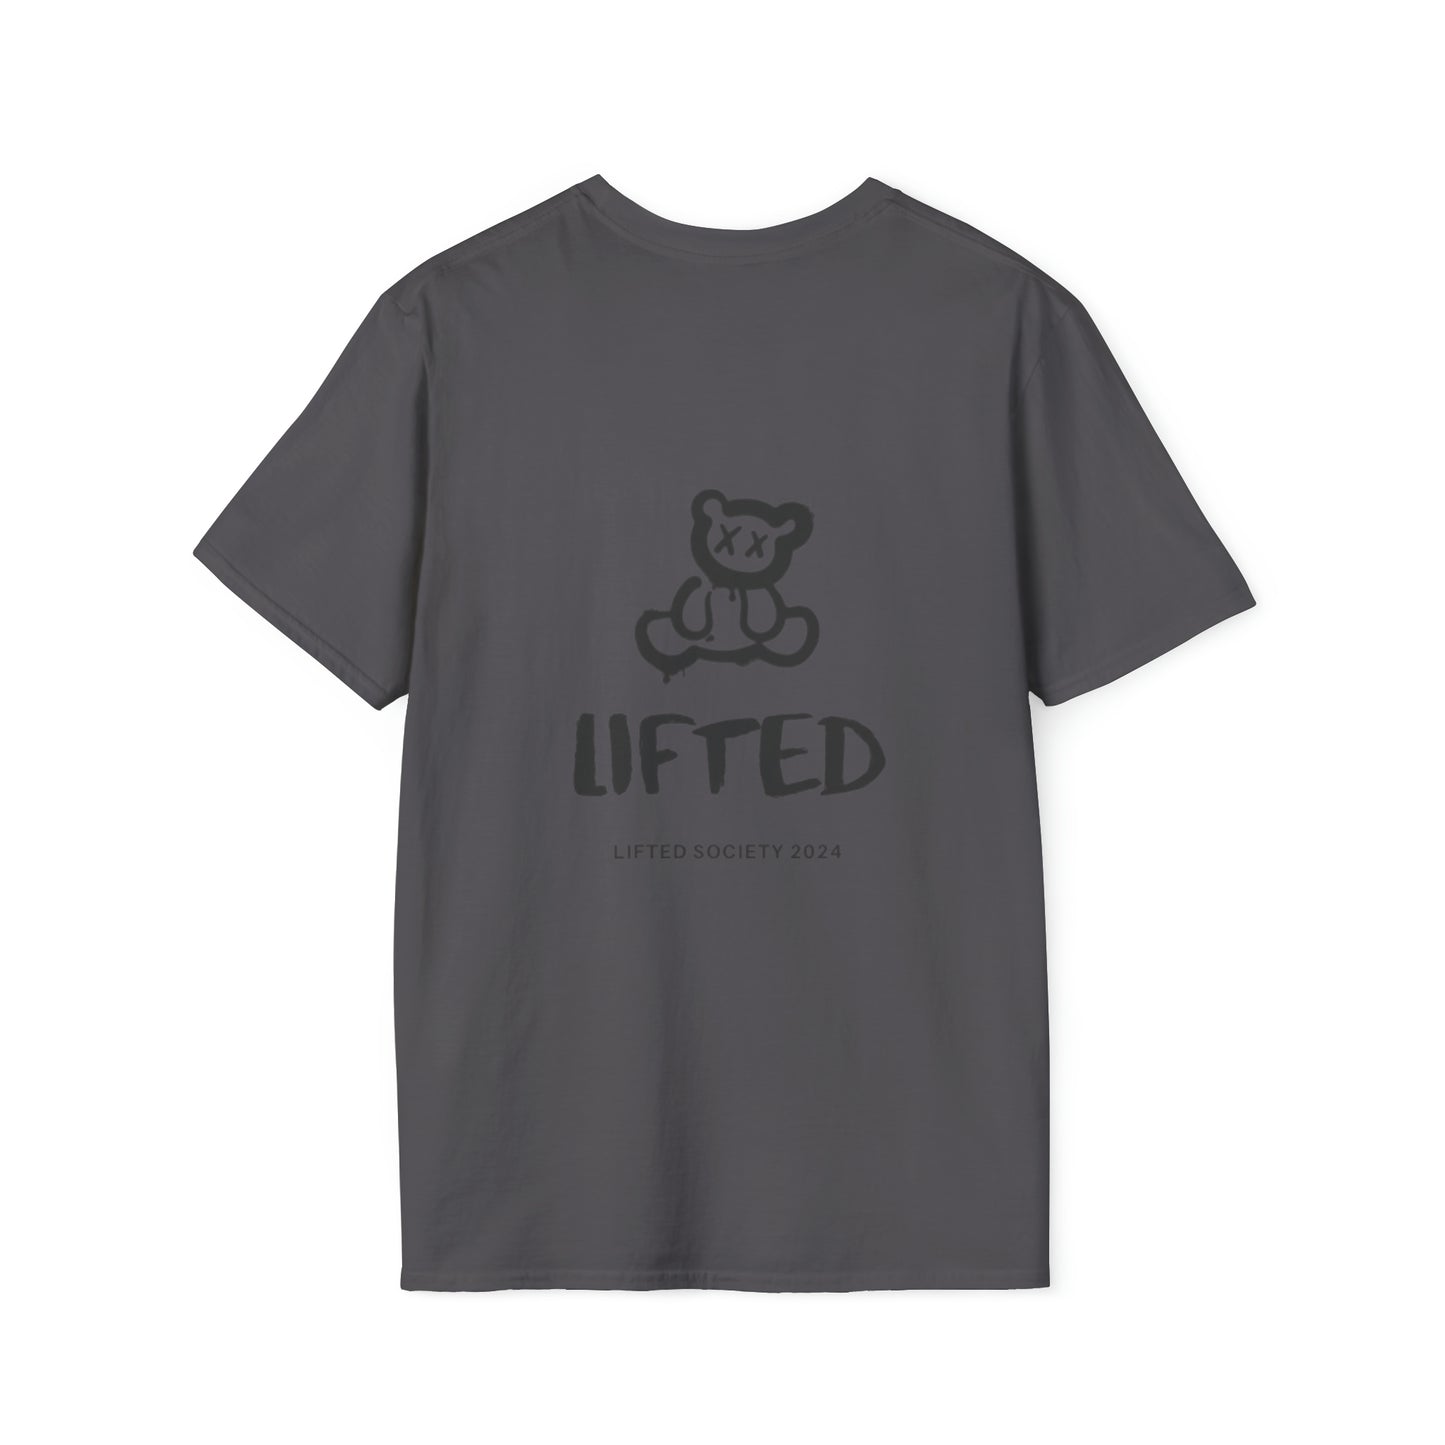 Lifted Society Bear logo